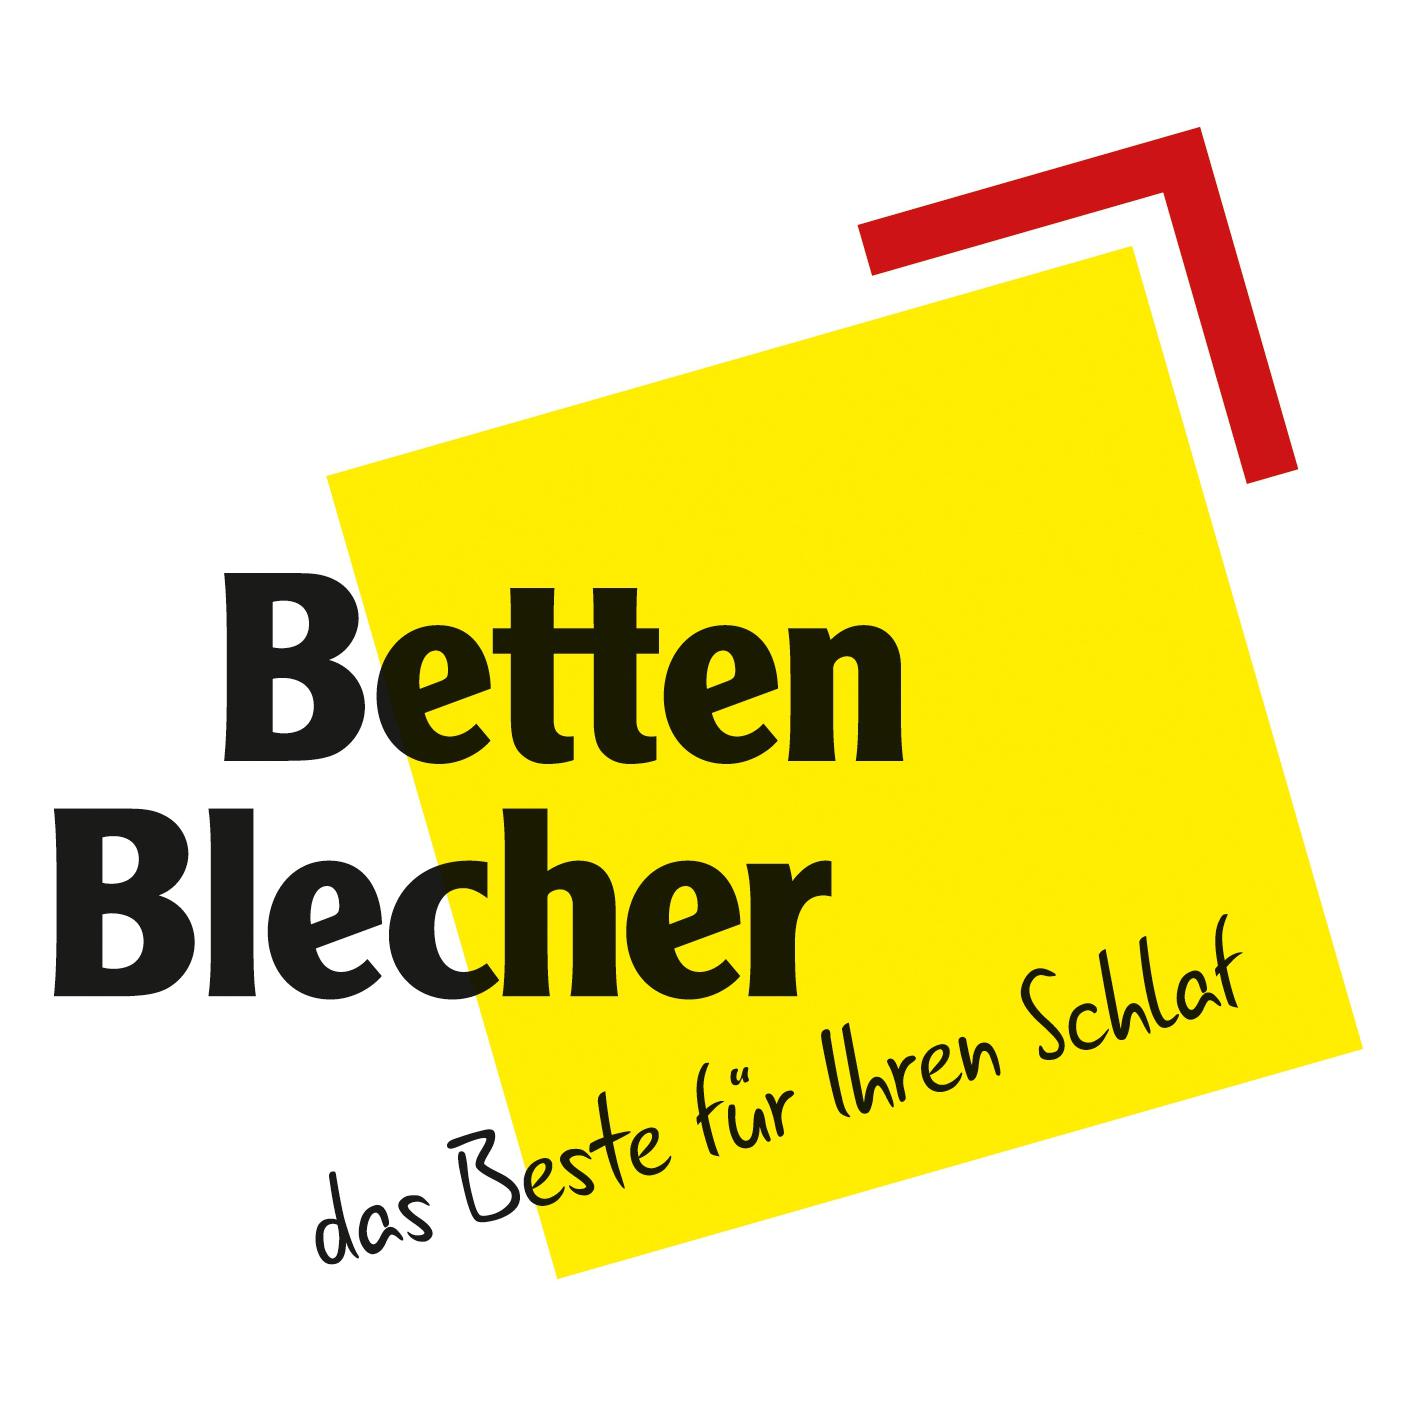 Betten-Blecher GmbH in Siegen - Logo